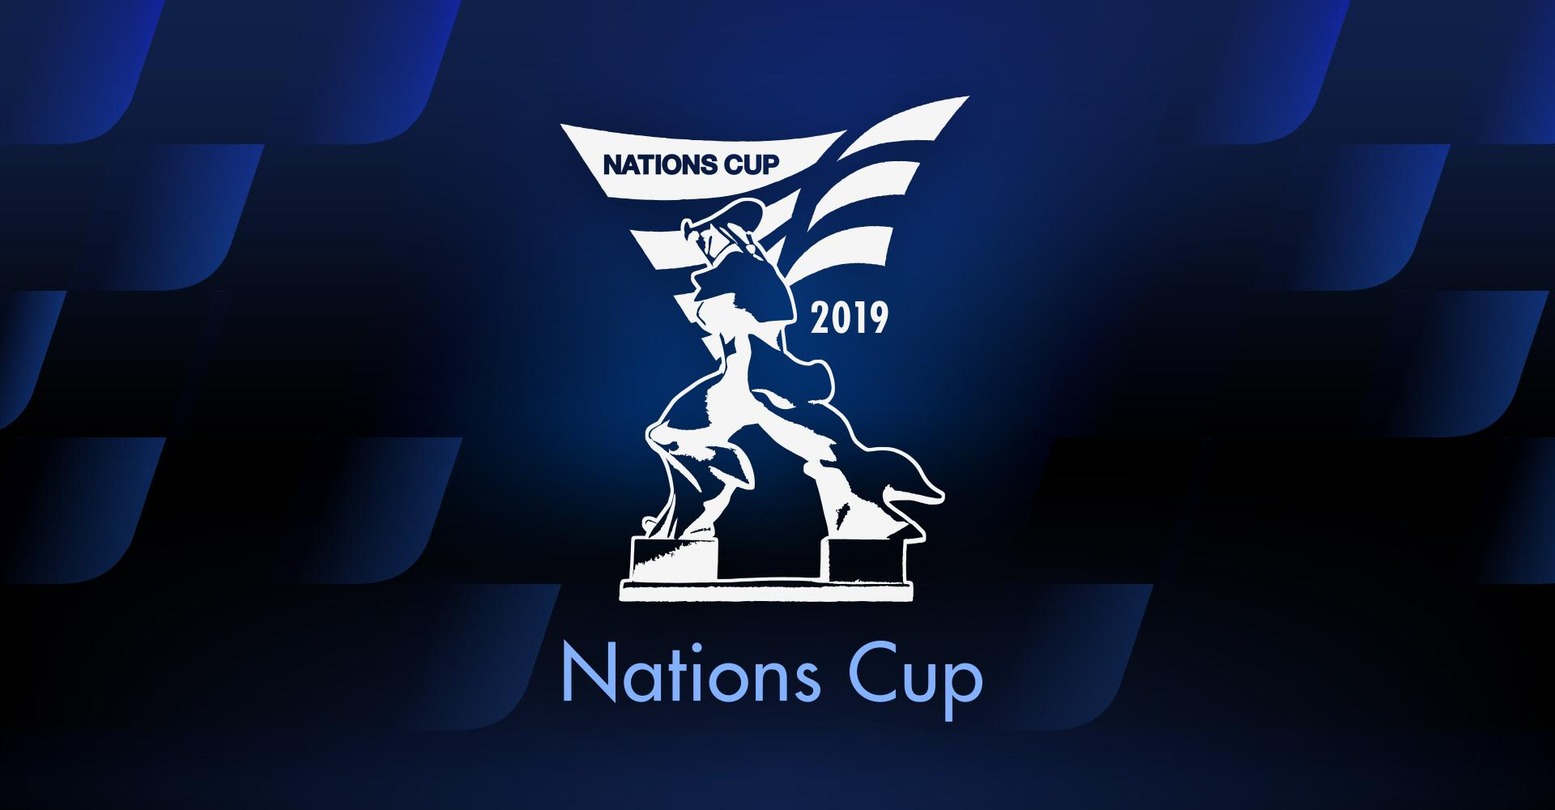 Nations Cup Pré-saison 2020 I1PFA5XklOawPb